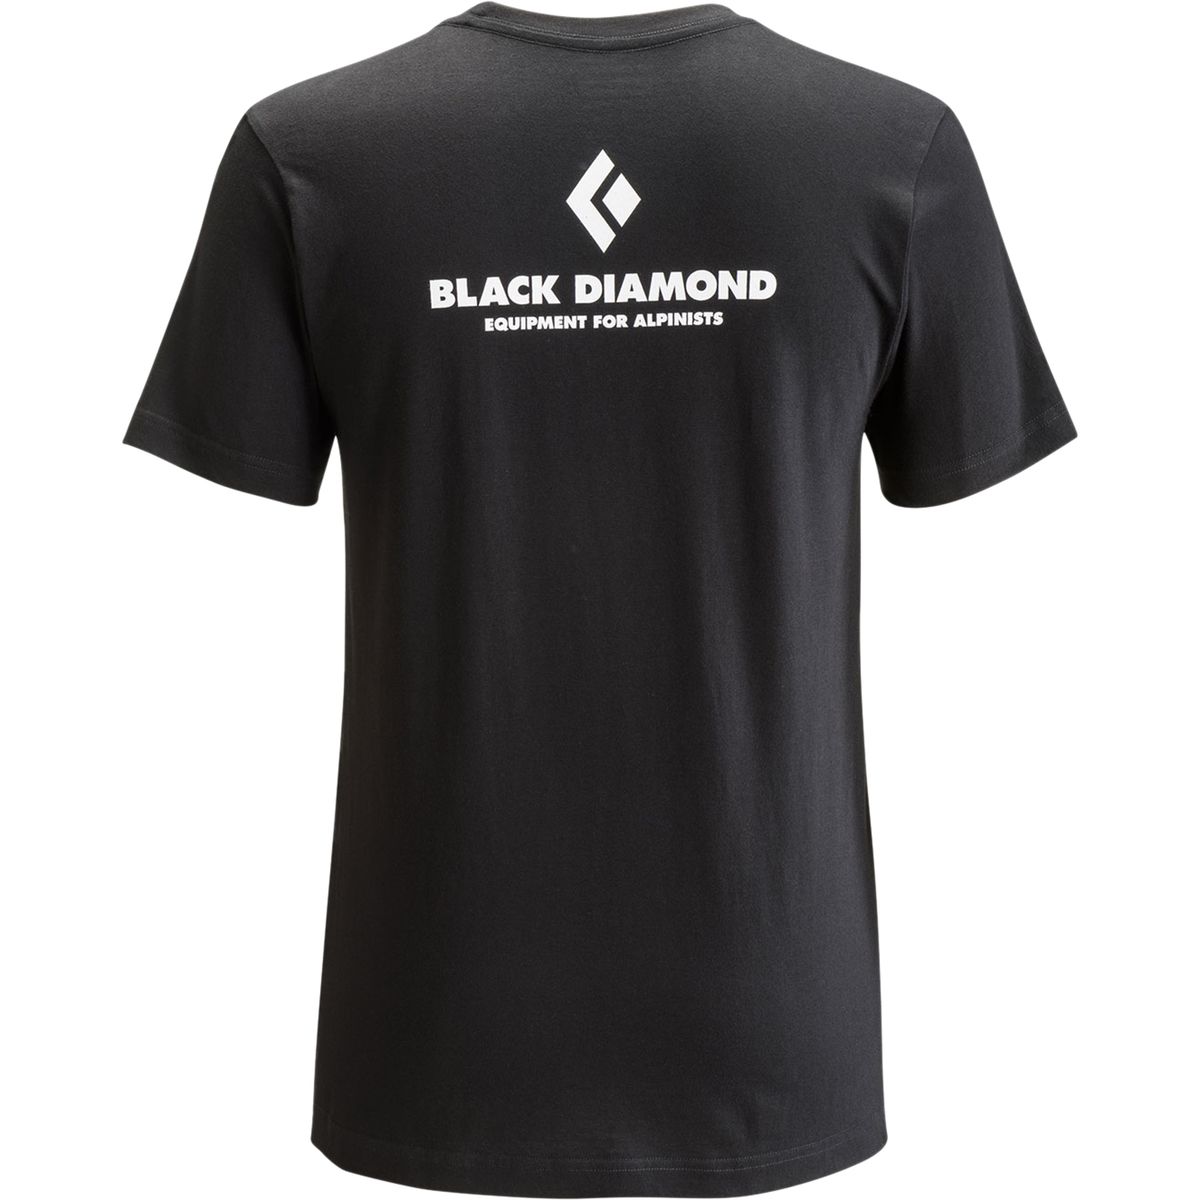 Футболка Black Diamond Equipment For Alpinists Black Diamond